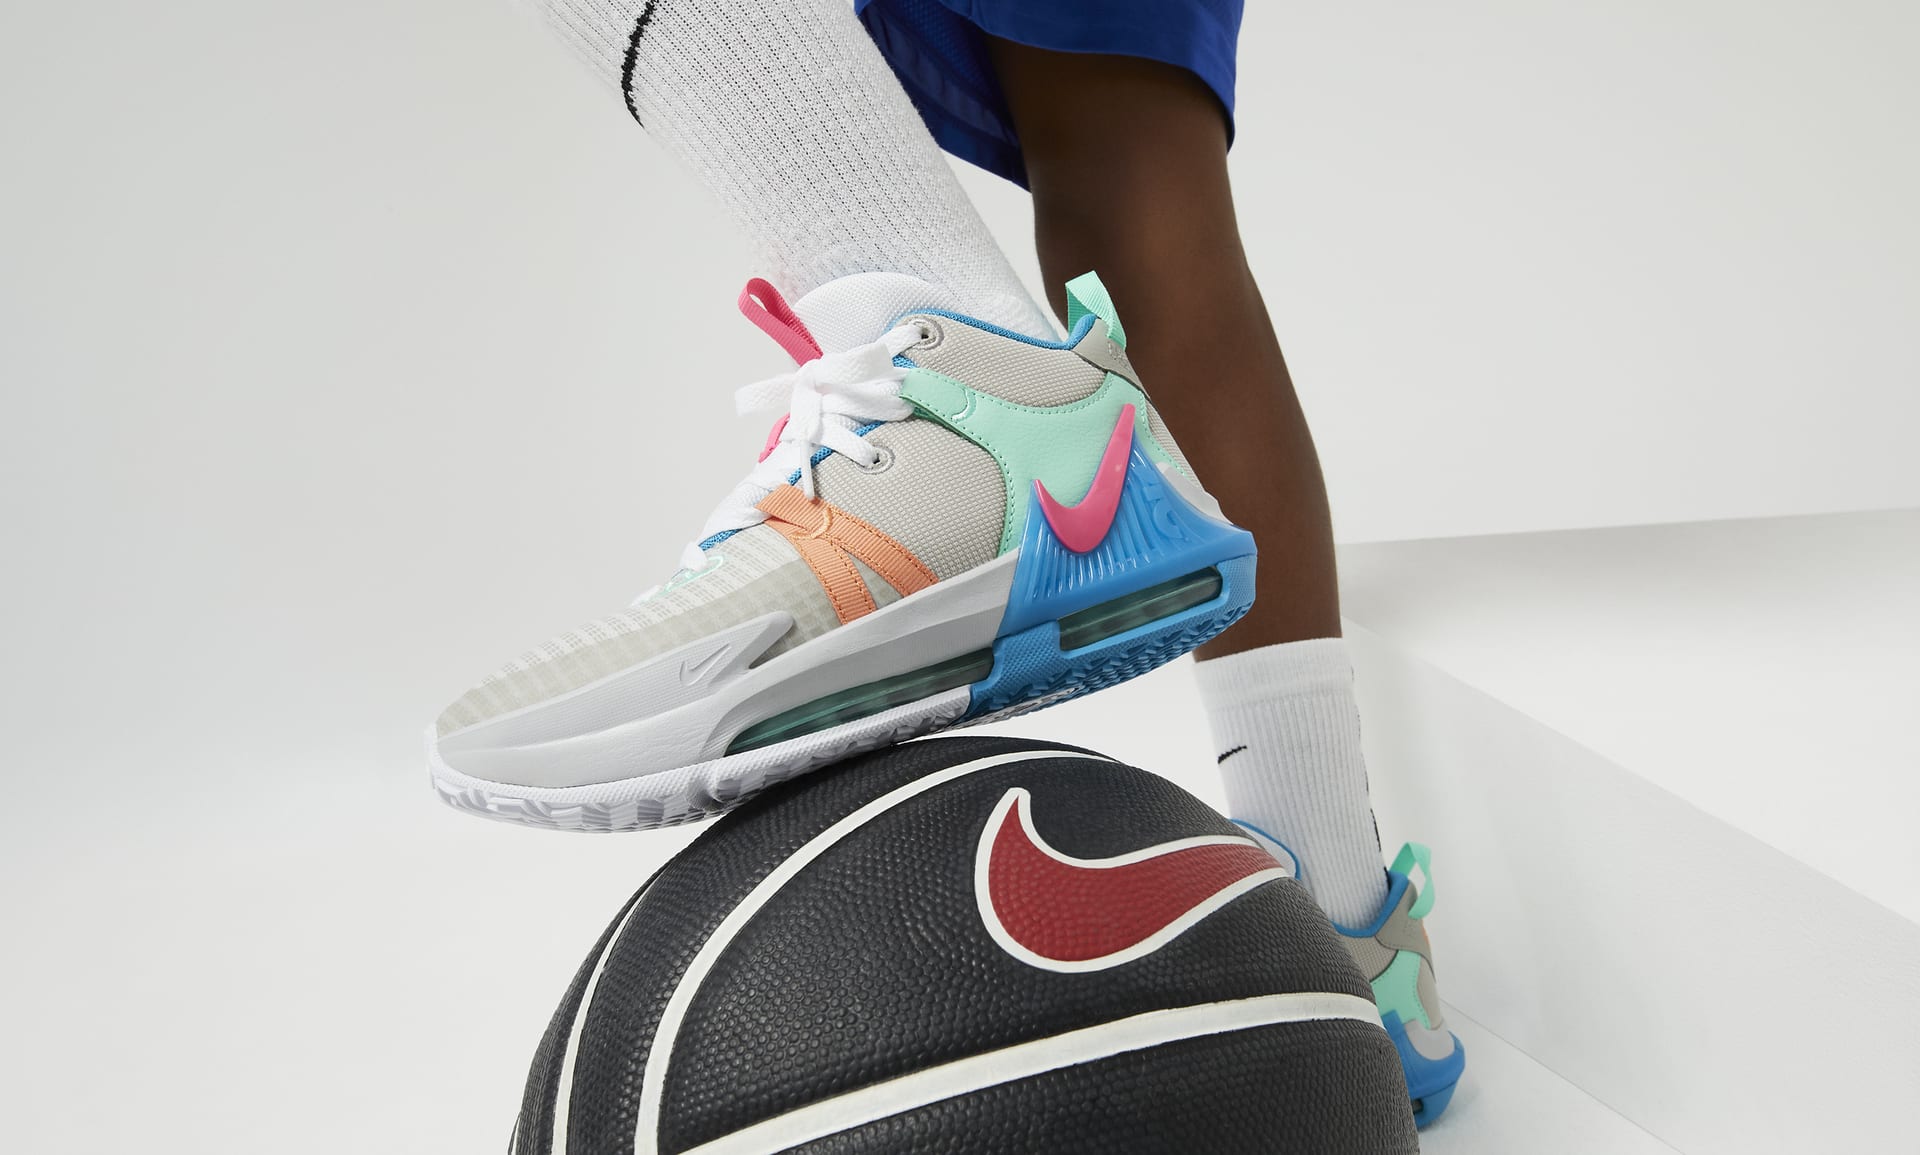 LeBron Witness 7 Big Kids' Basketball Shoes. Nike.com